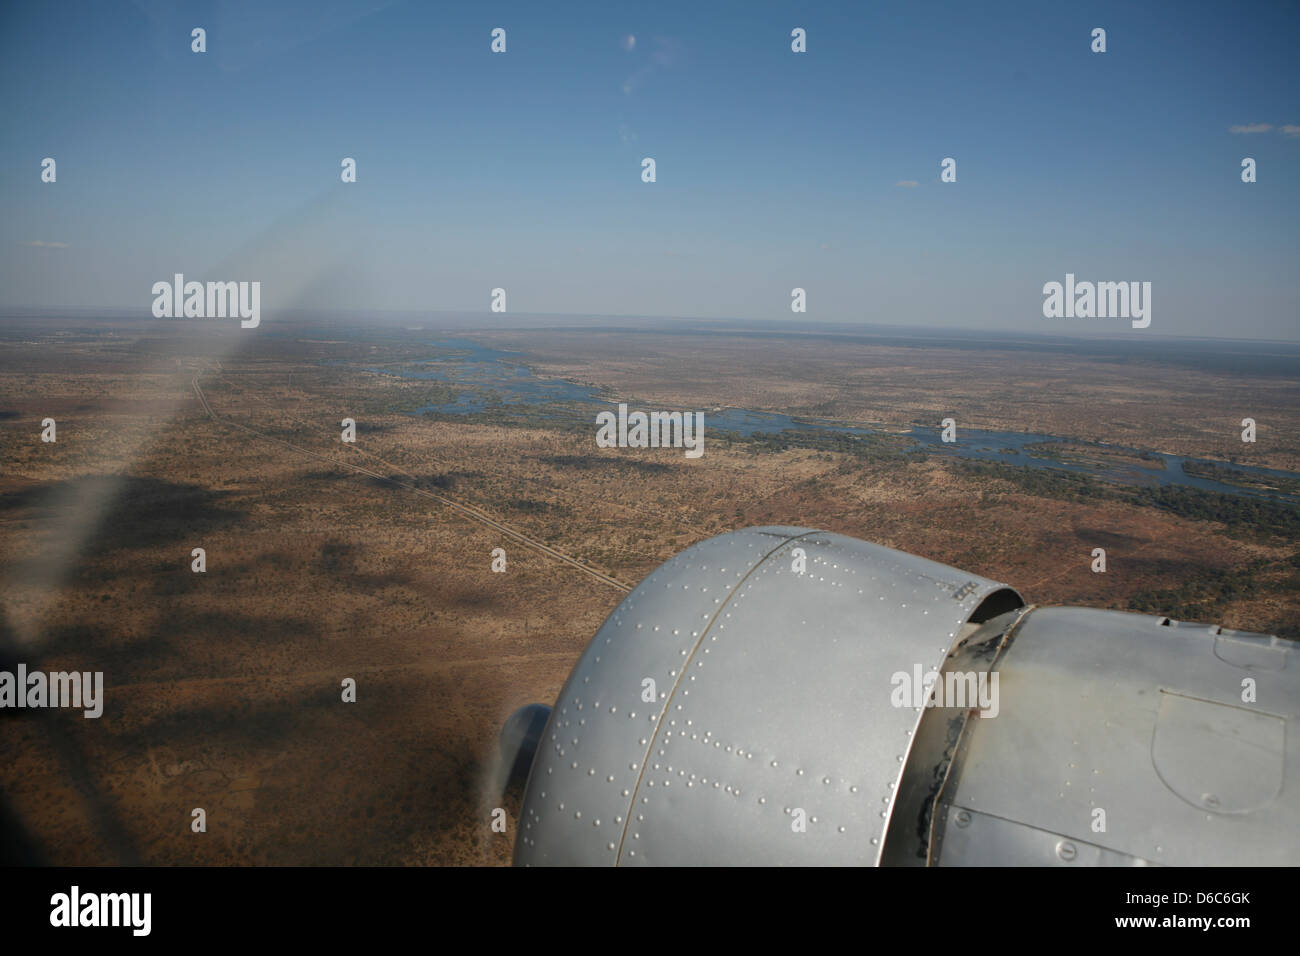 Fiume Zambesi visto dall'aria al di sopra della cappottatura del motore ed elica di un aeromobile, vicino a Livingstone, il sud dello Zambia, Africa Foto Stock